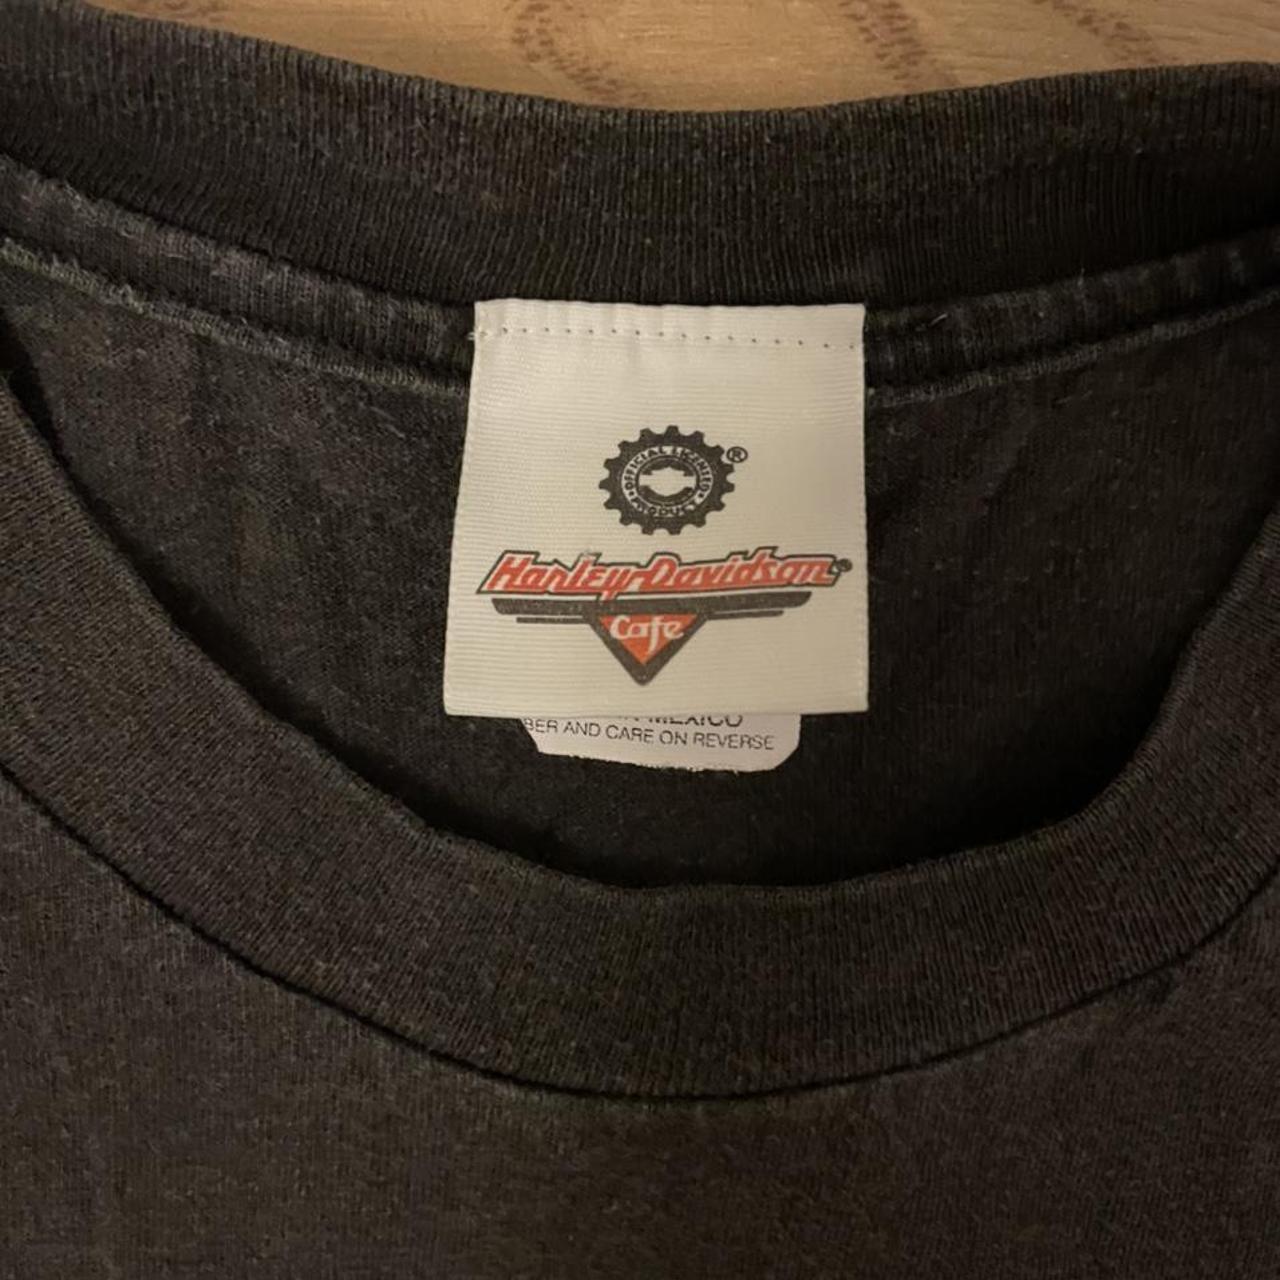 Vintage Harley Davidson Cafe graphic logo T-shirt,... - Depop